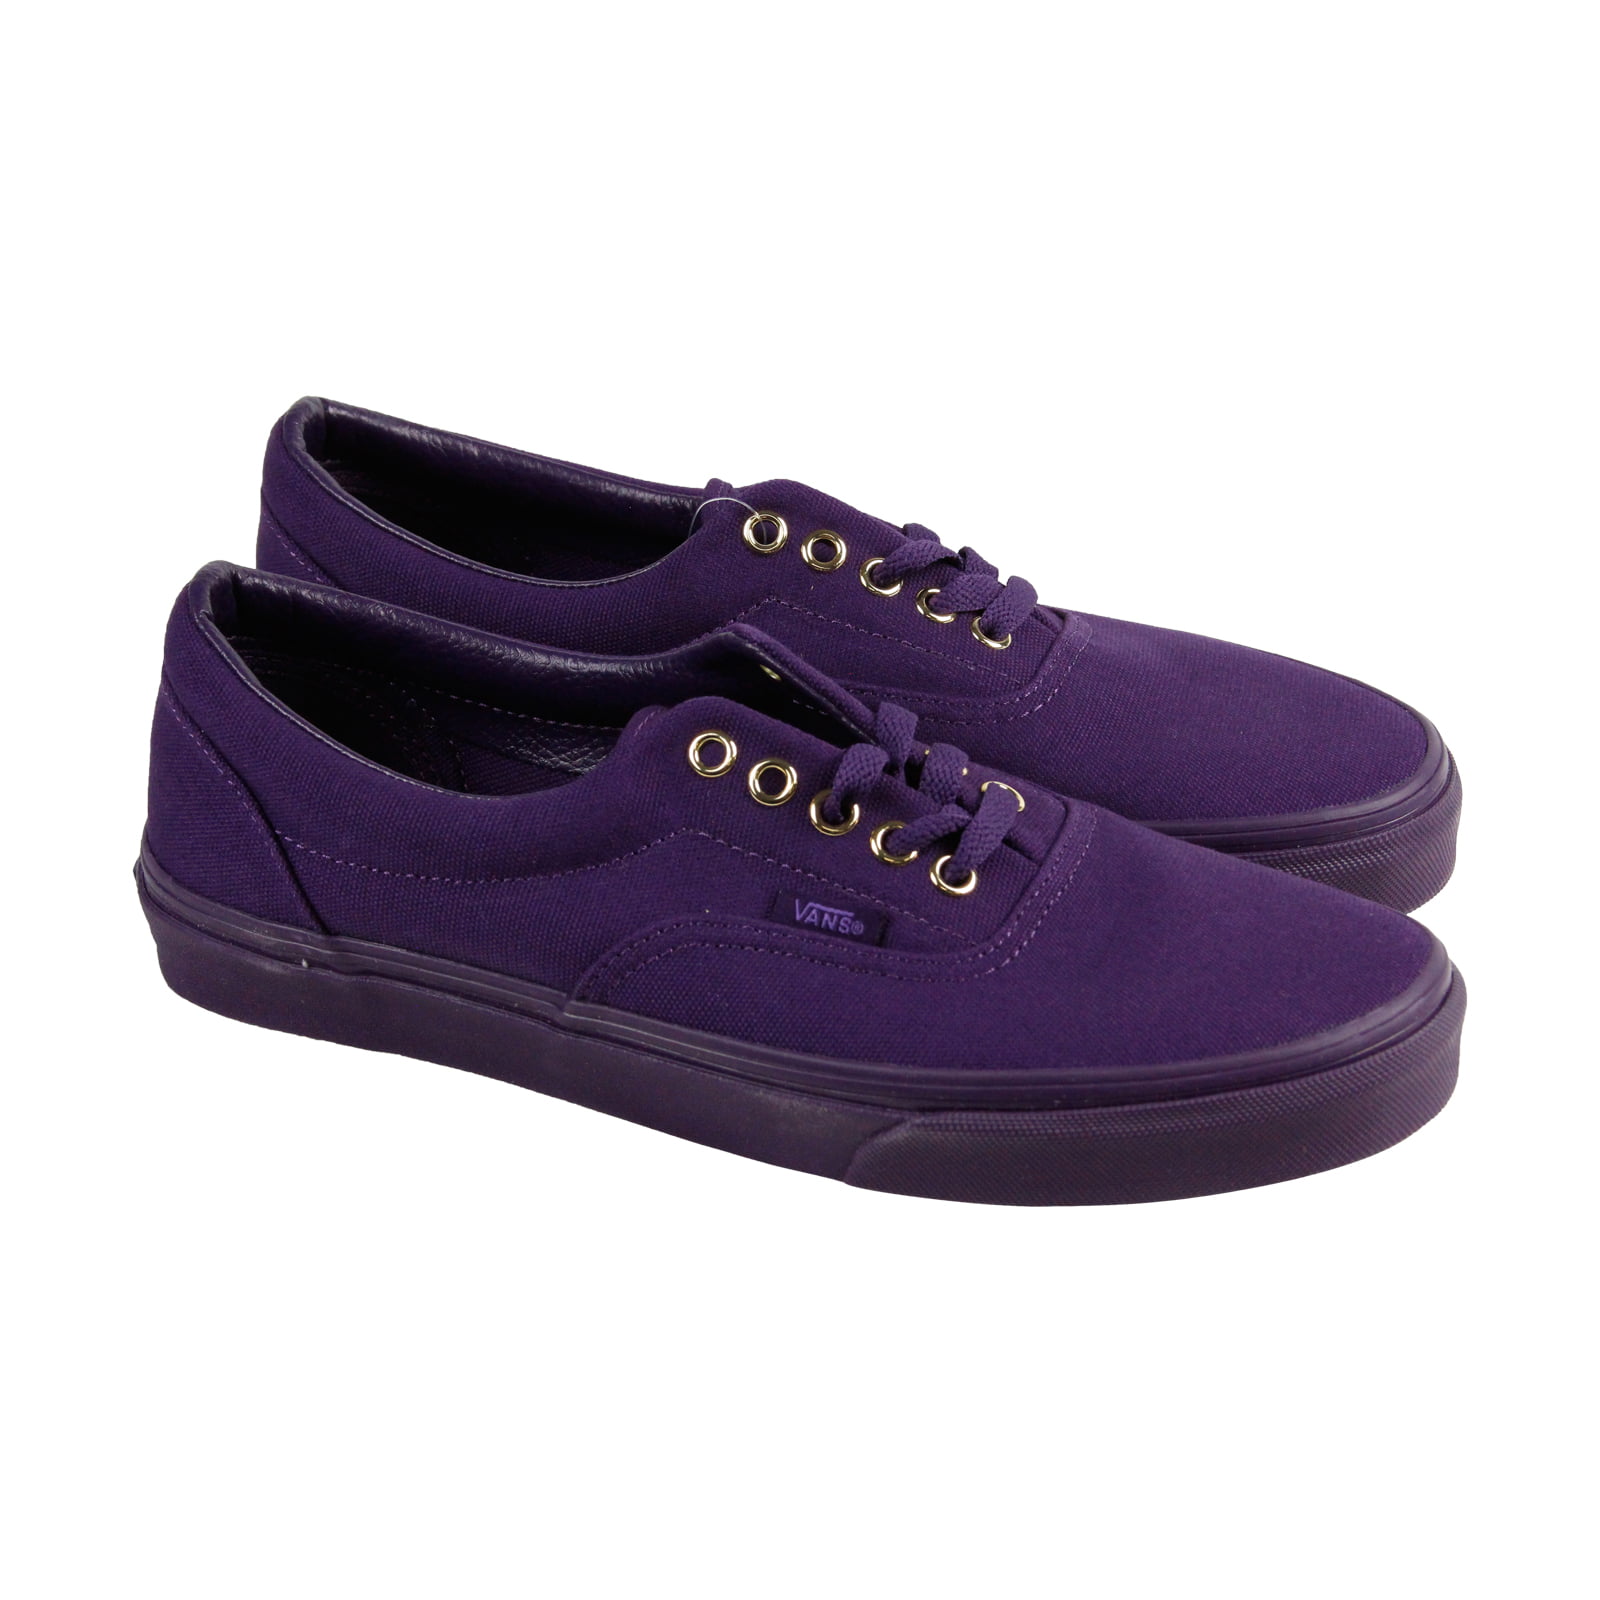 Vans Vans Era Mens Purple Canvas Lace Up Lace Up Sneakers Shoes